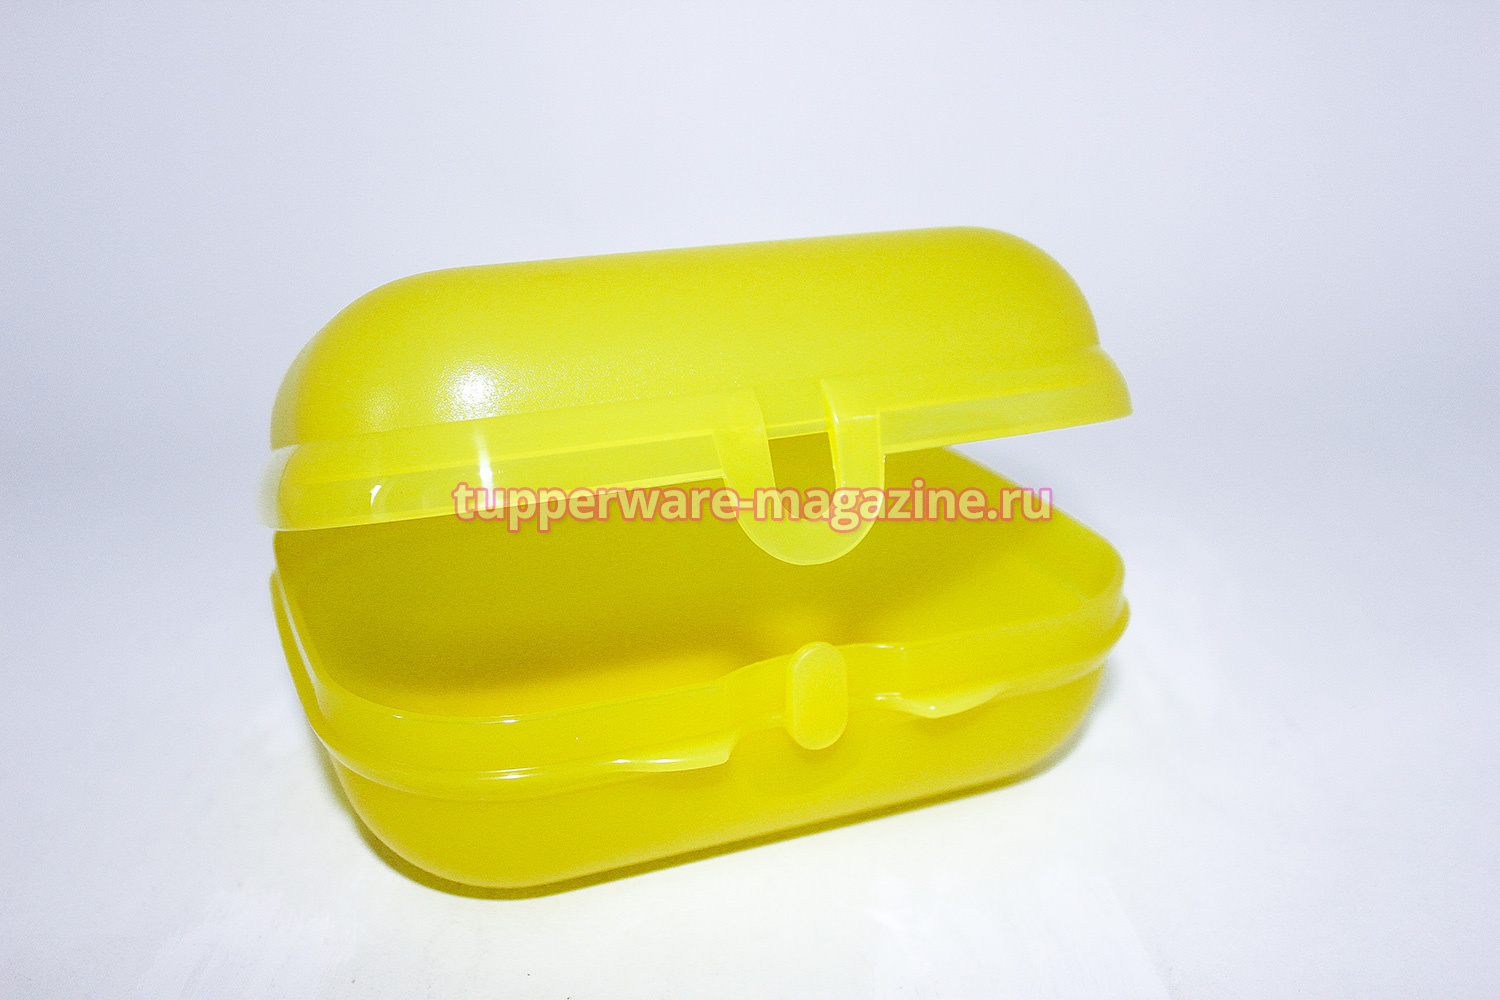 Набор Ланч-бокс большой в желтом цвете + эко-бутылка 750 мл с клапаном в желтом цвете